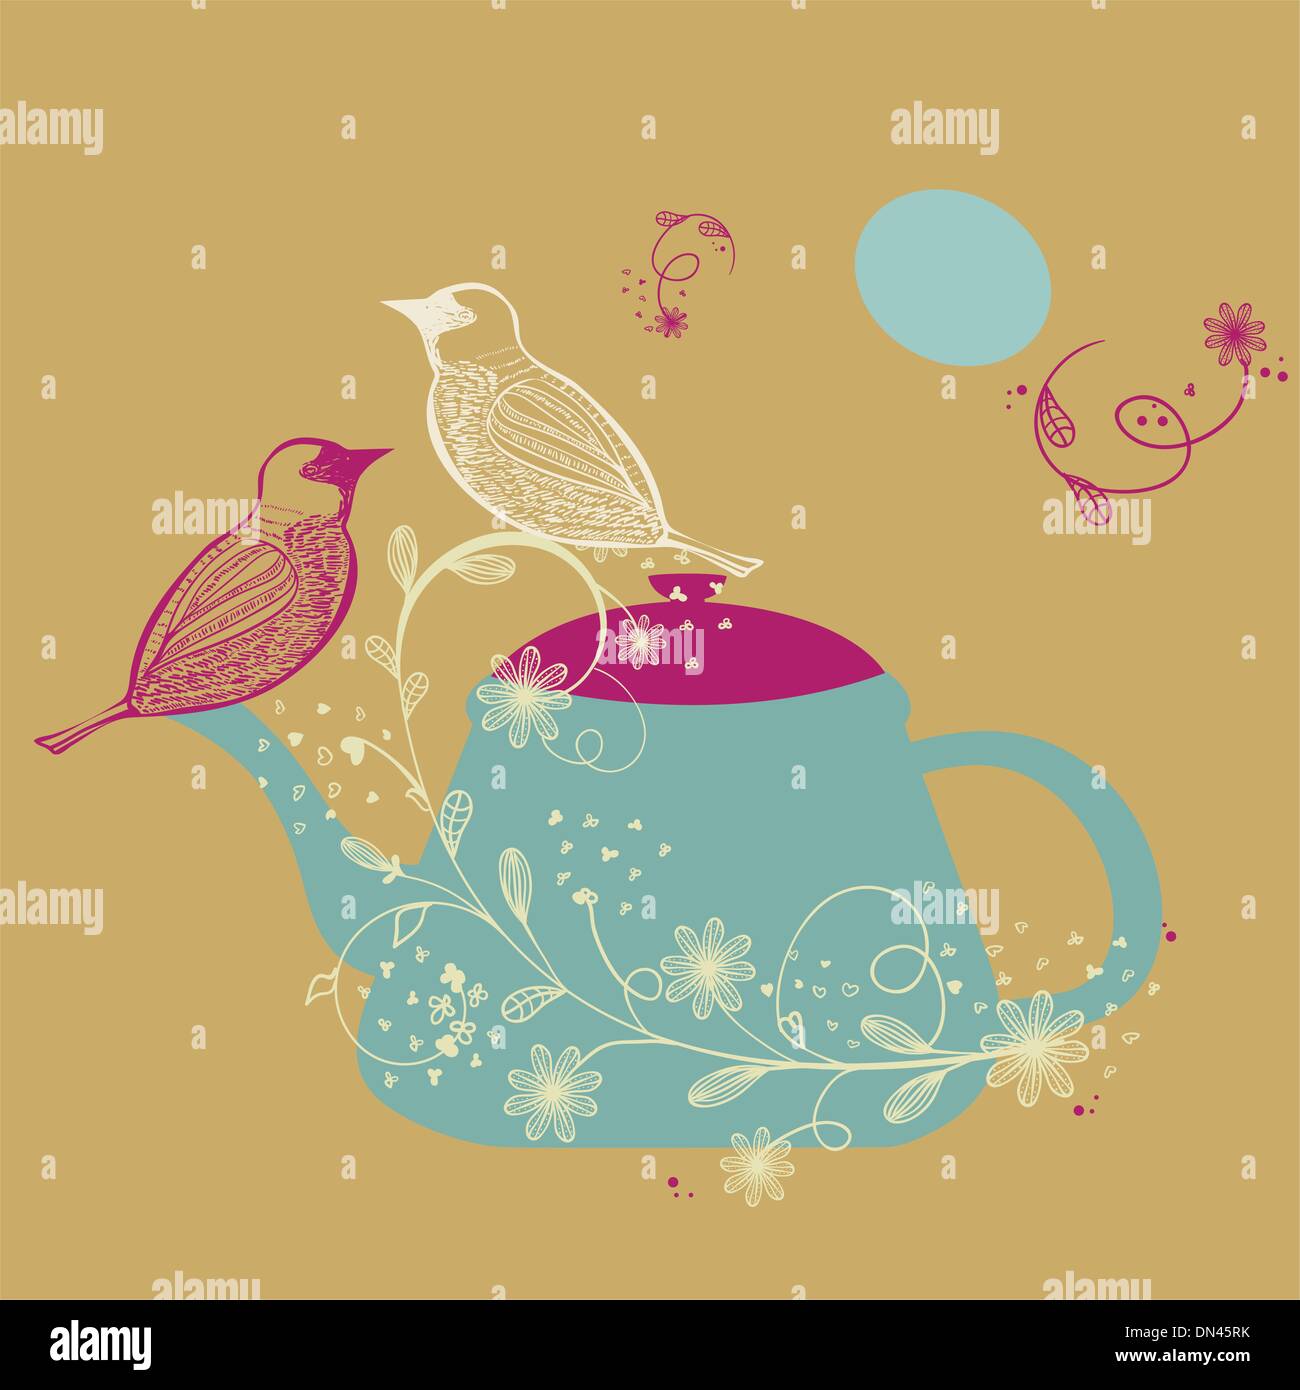 Vögel-paar auf die Teekanne hand gezeichnete Vektor-illustration Stock Vektor